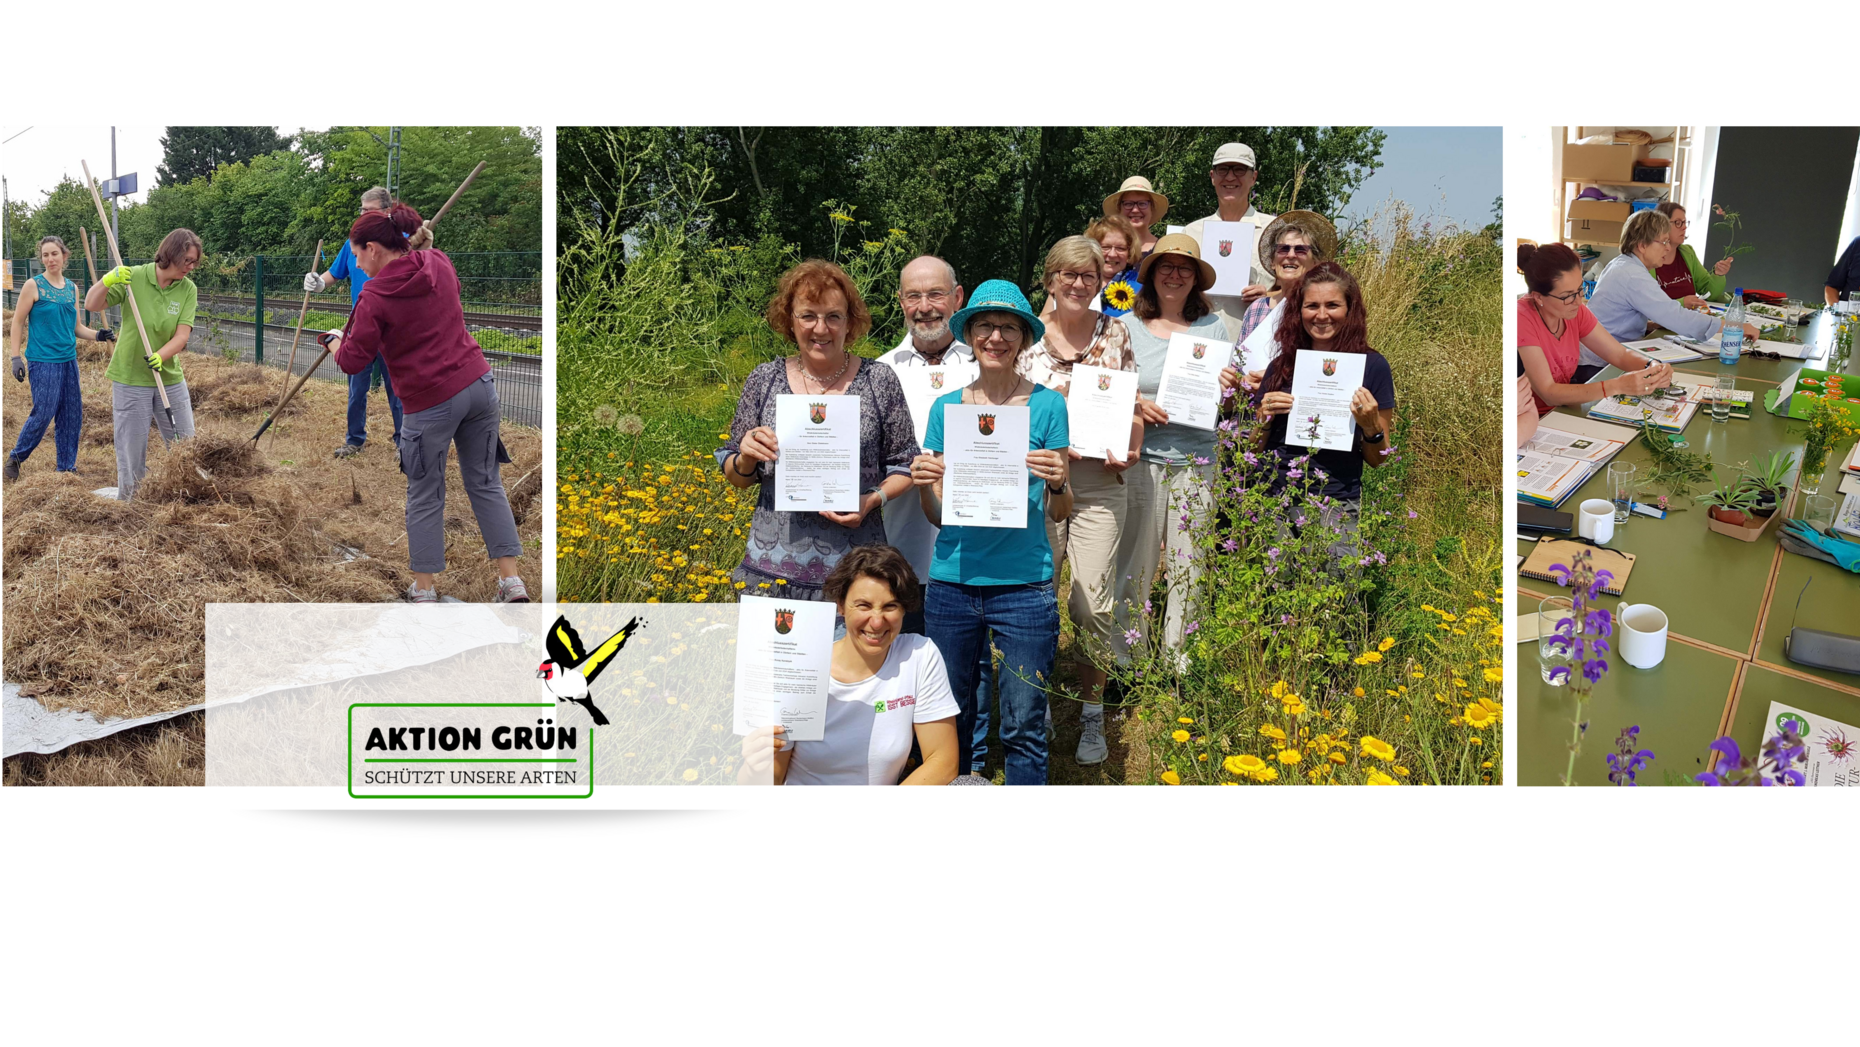 Wildkräuterbotschafterinnen und -botschafter bei der Arbeit, mit Zertifikat auf einer Wiese inmitten von Wildkräutern und während des Unterrichts